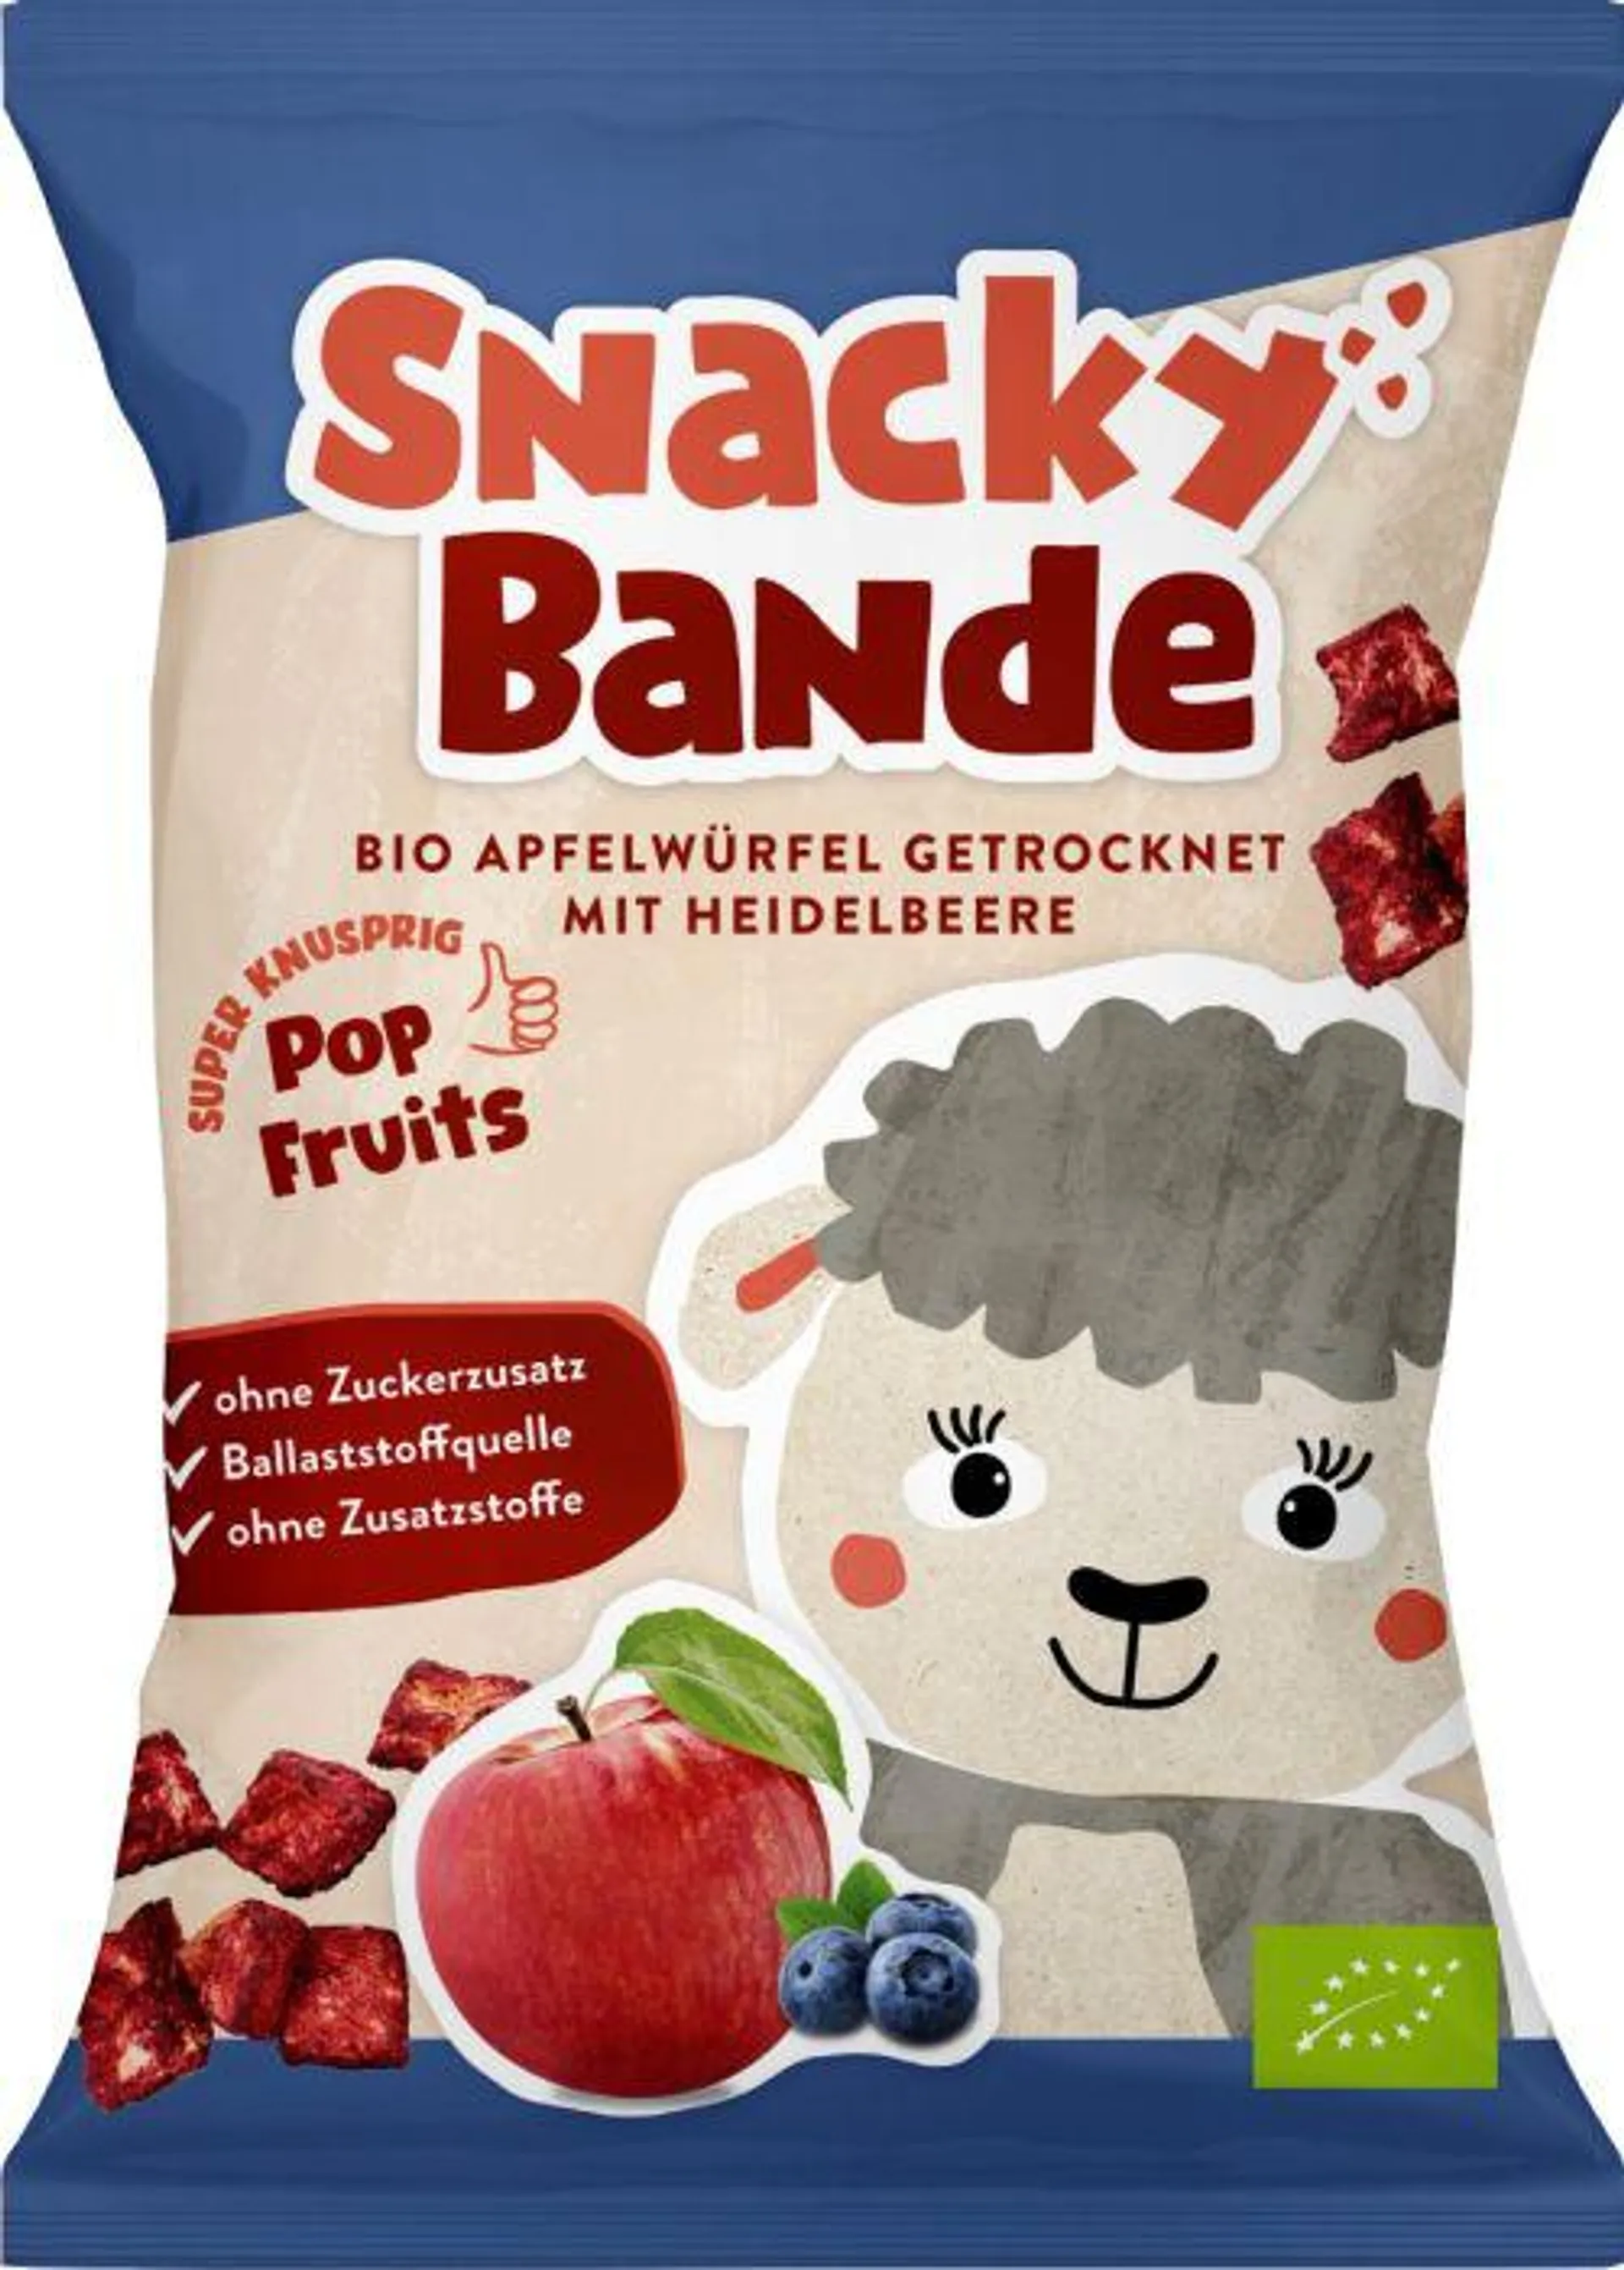 Snacky Bande Apfelwürfel Heidelbeere EU BIO 14g